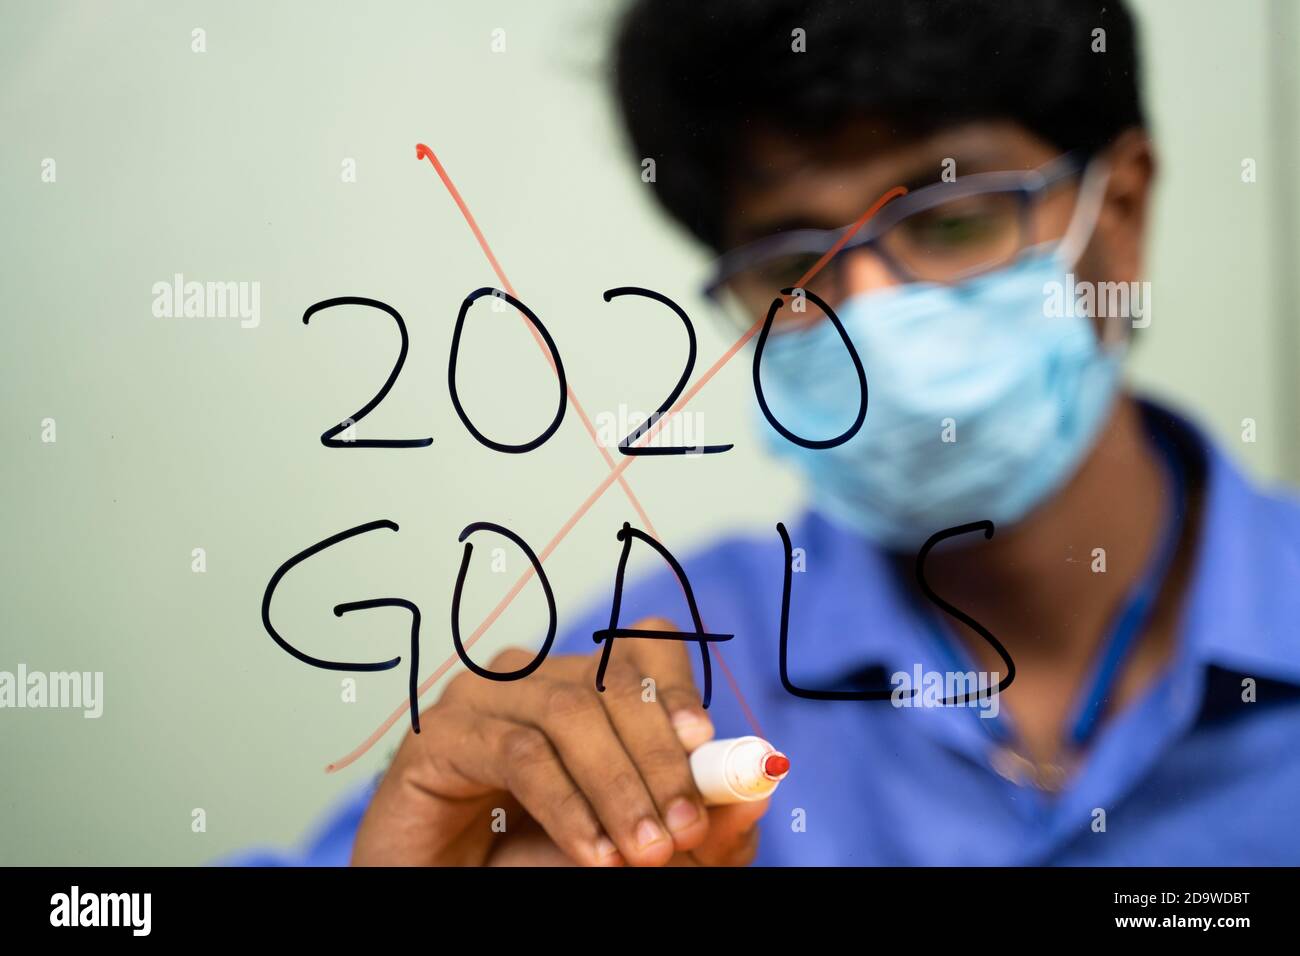 Giovane uomo in maschera medica graffiando 2020 obiettivi a causa di coronavirus o covid-19 pandemia - concetto di fallimento 2020 obiettivi. Foto Stock